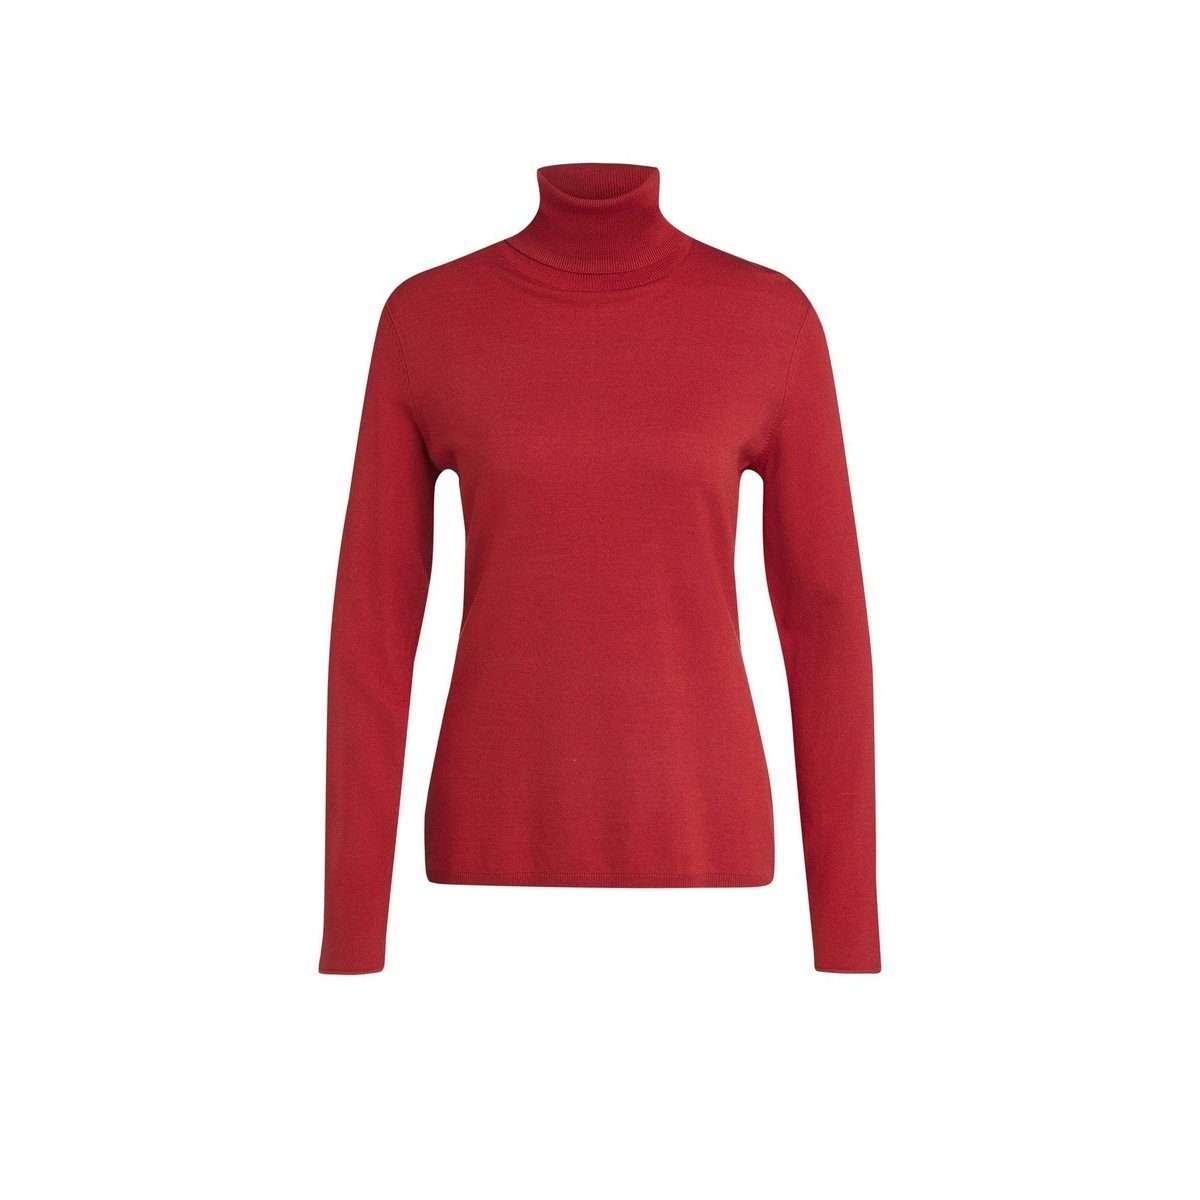 Длинный свитер красный обычный (1 шт.)